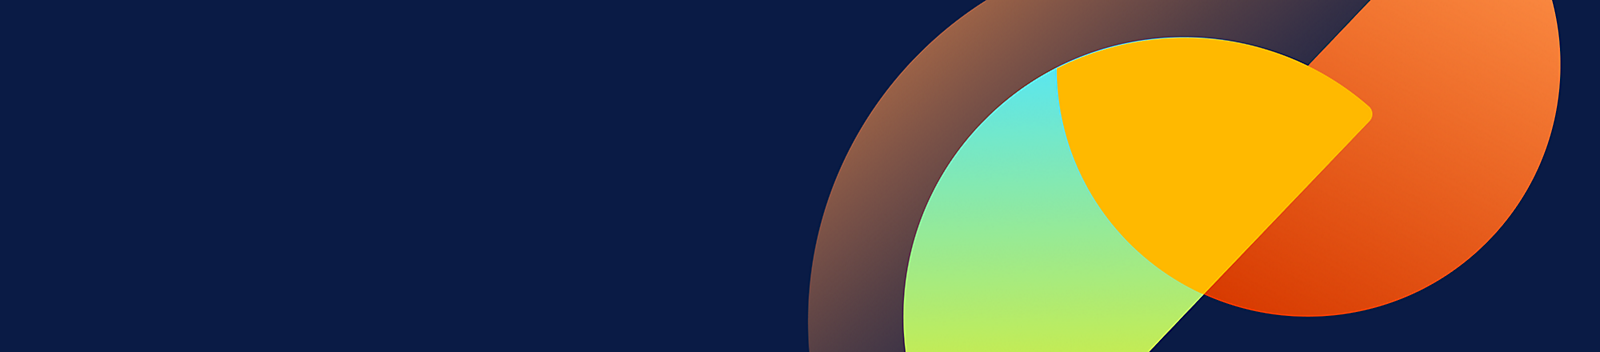 Un semicírculo de color naranja y un semicírculo verde y amarillo sobre un fondo azul.